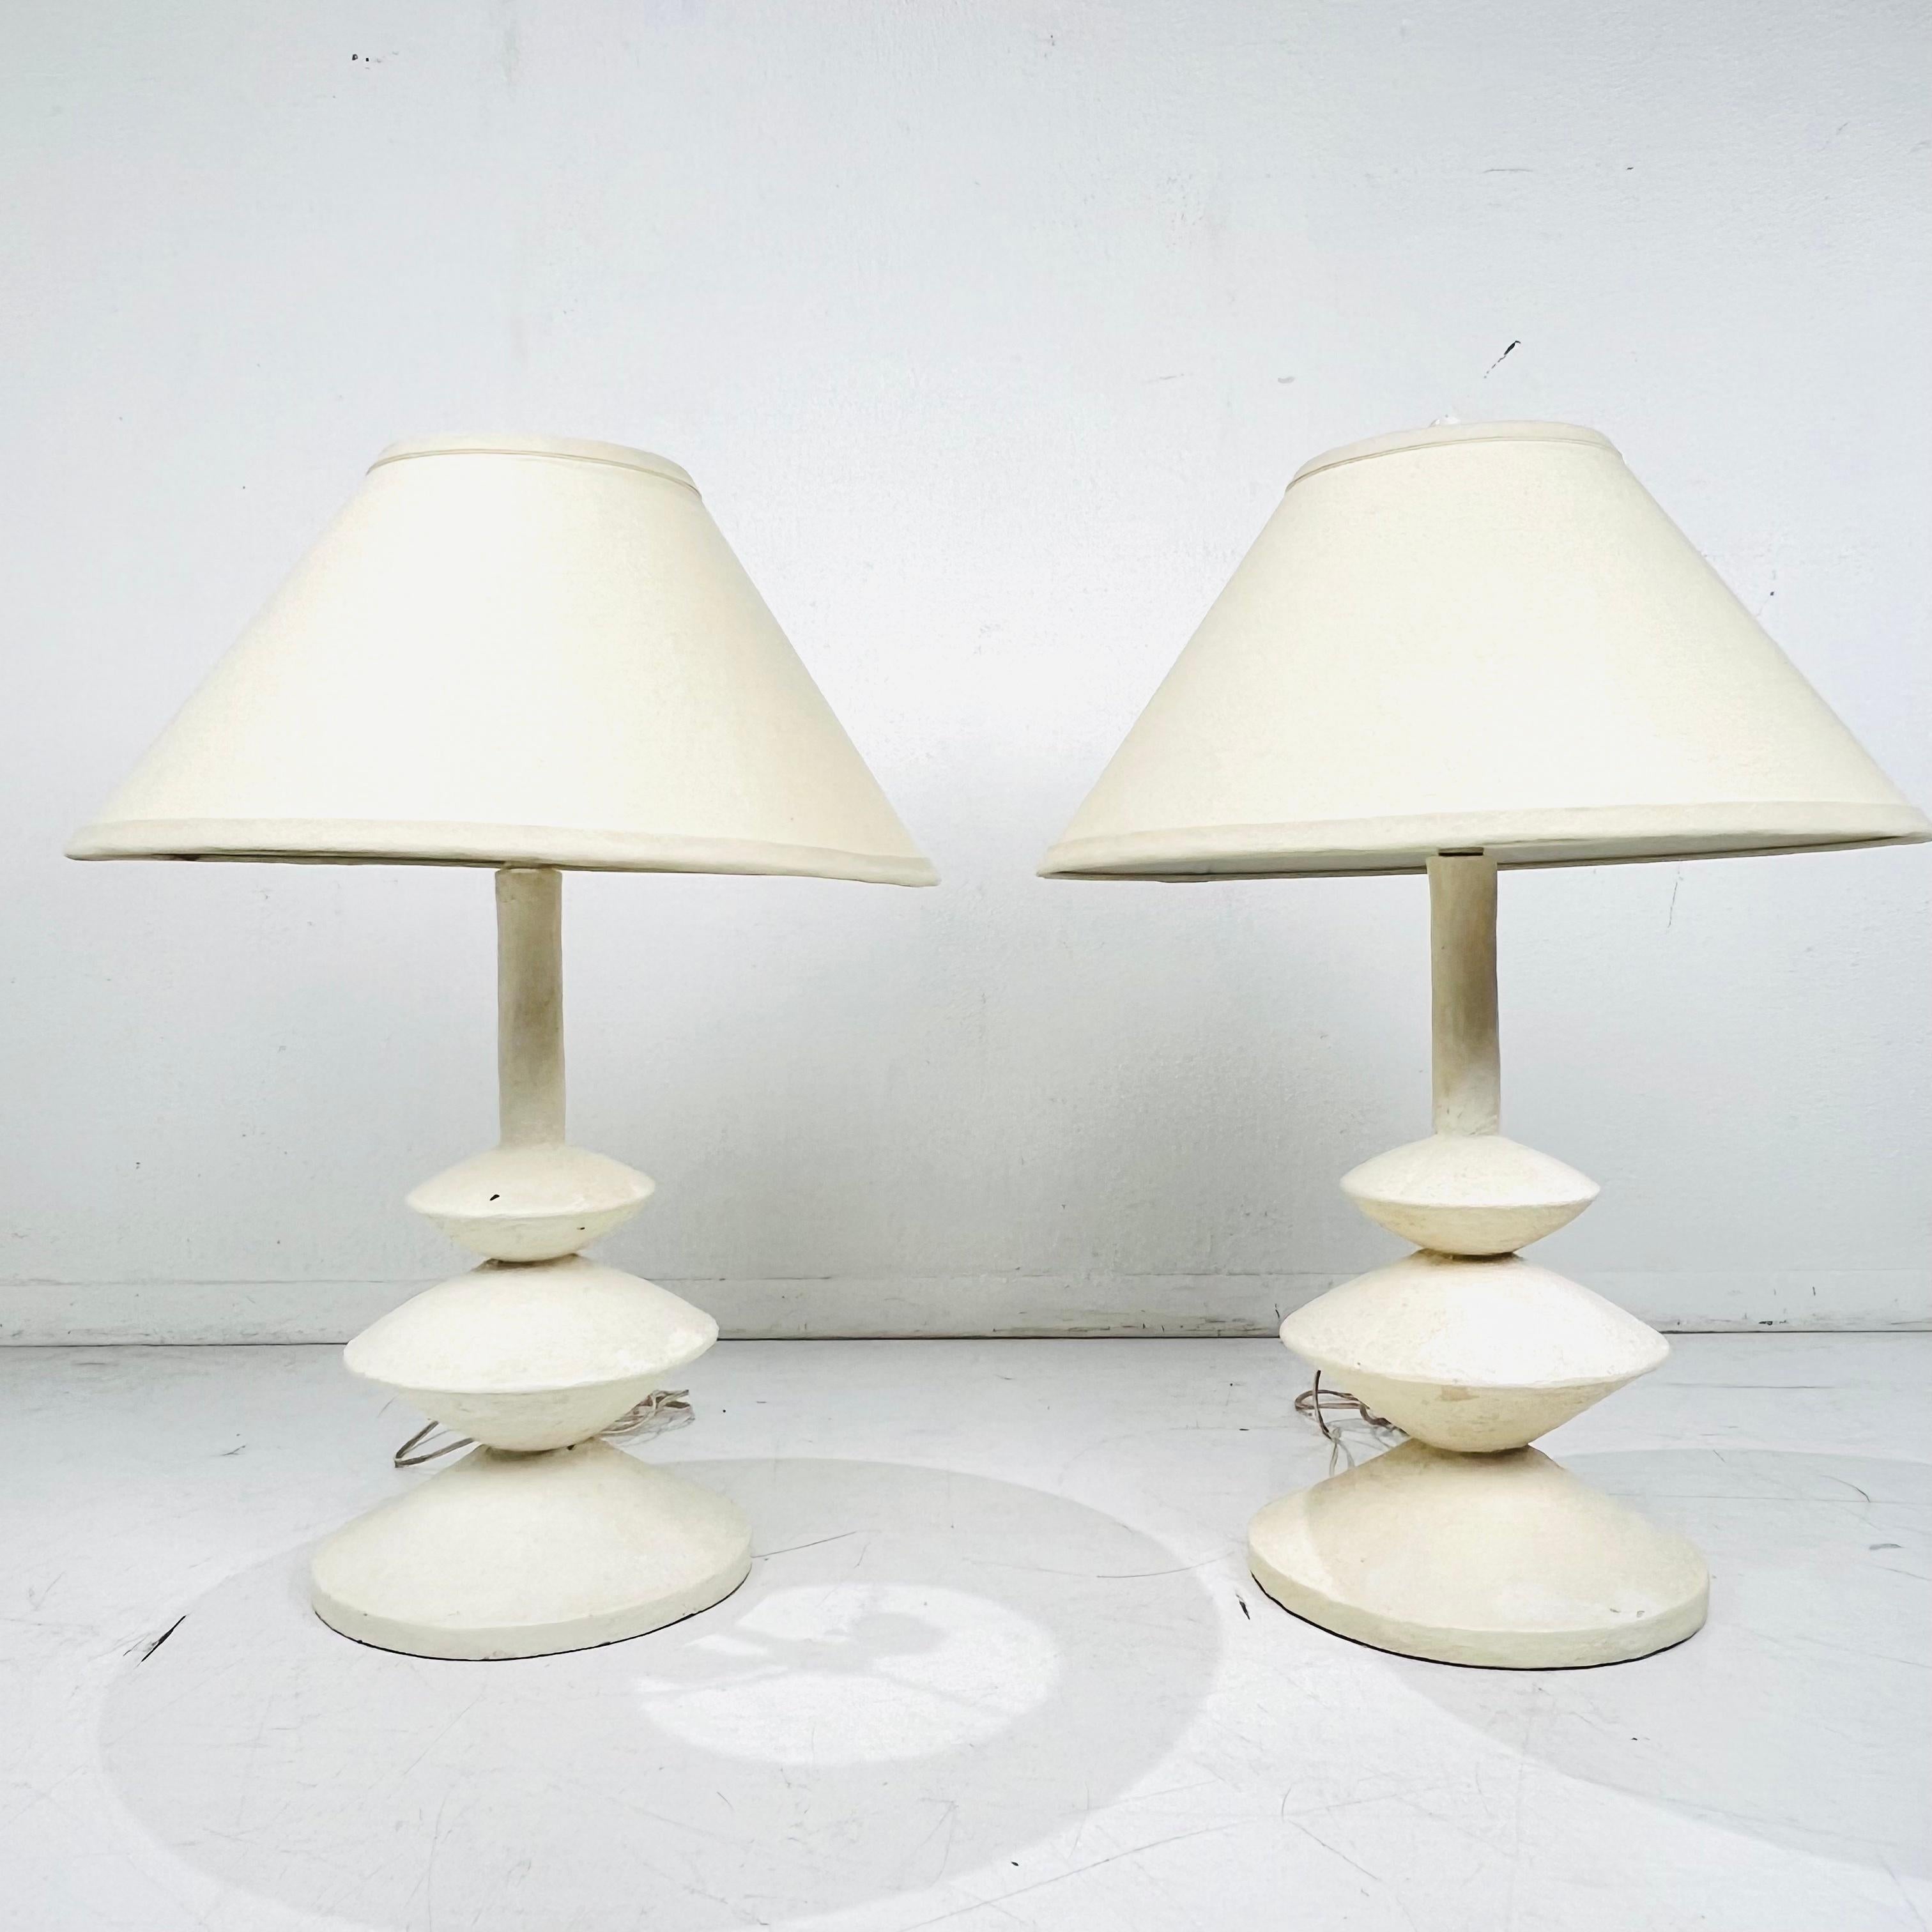 Elegante paire de lampes de table de style français dans le style d'Alberto et Diego Giacometti. Ces lampes ont une forme organique colonnaire et cylindrique intemporelle qui possède une sensibilité enchanteresse. Prix et vente par paire. Les